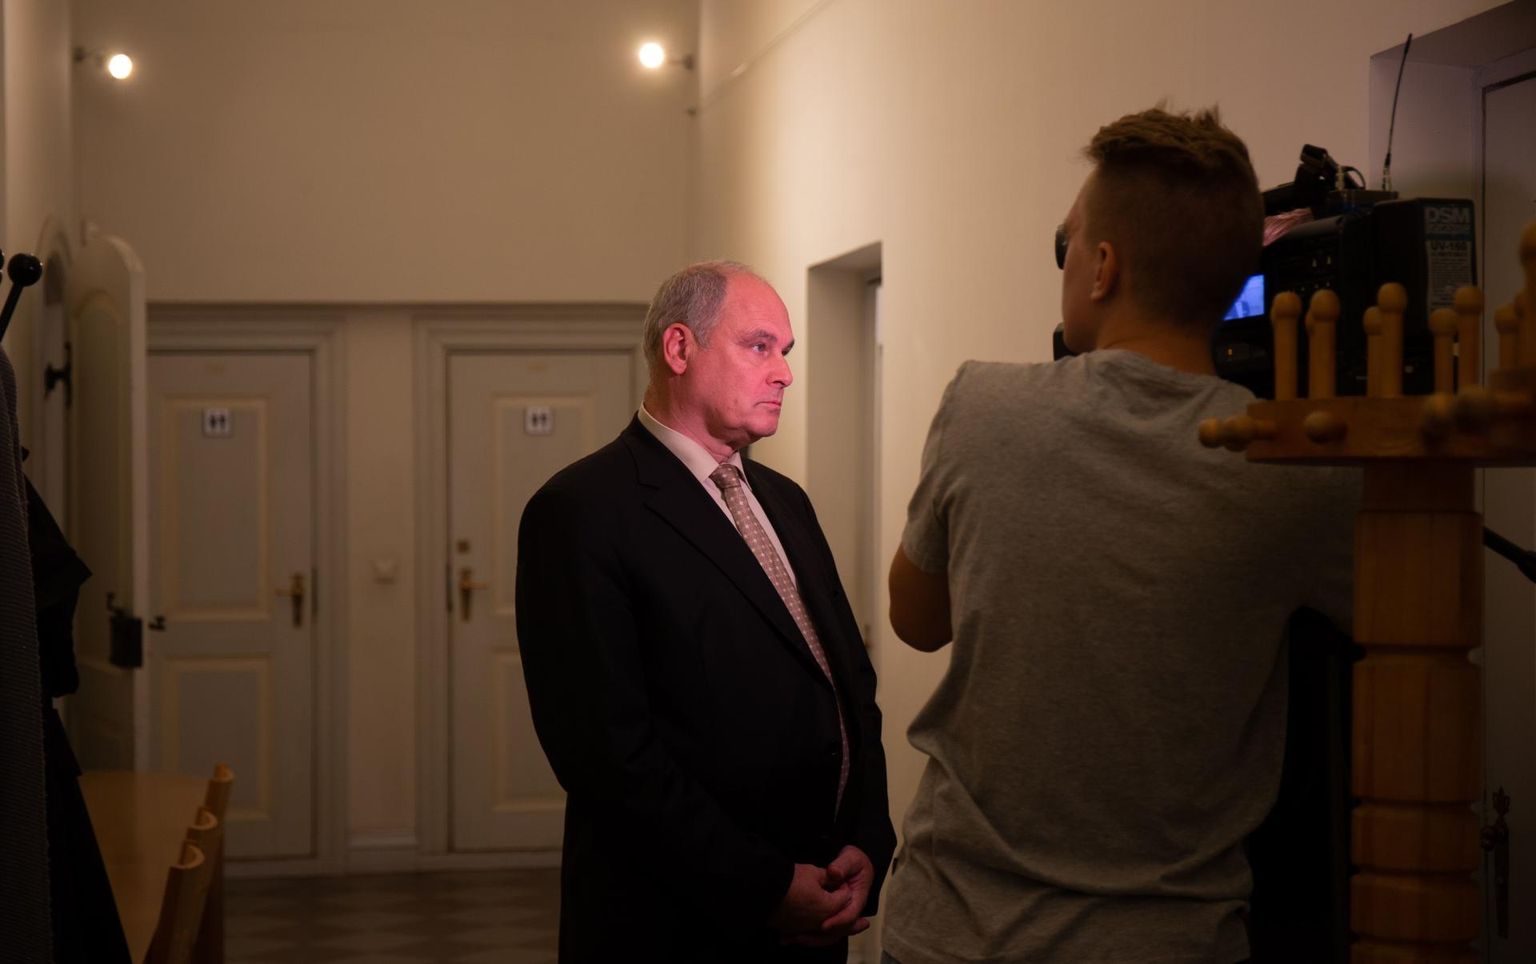 Keskerakonna Tartu piirkonna juht Jaan Toots raekojas intervjuud andmas.